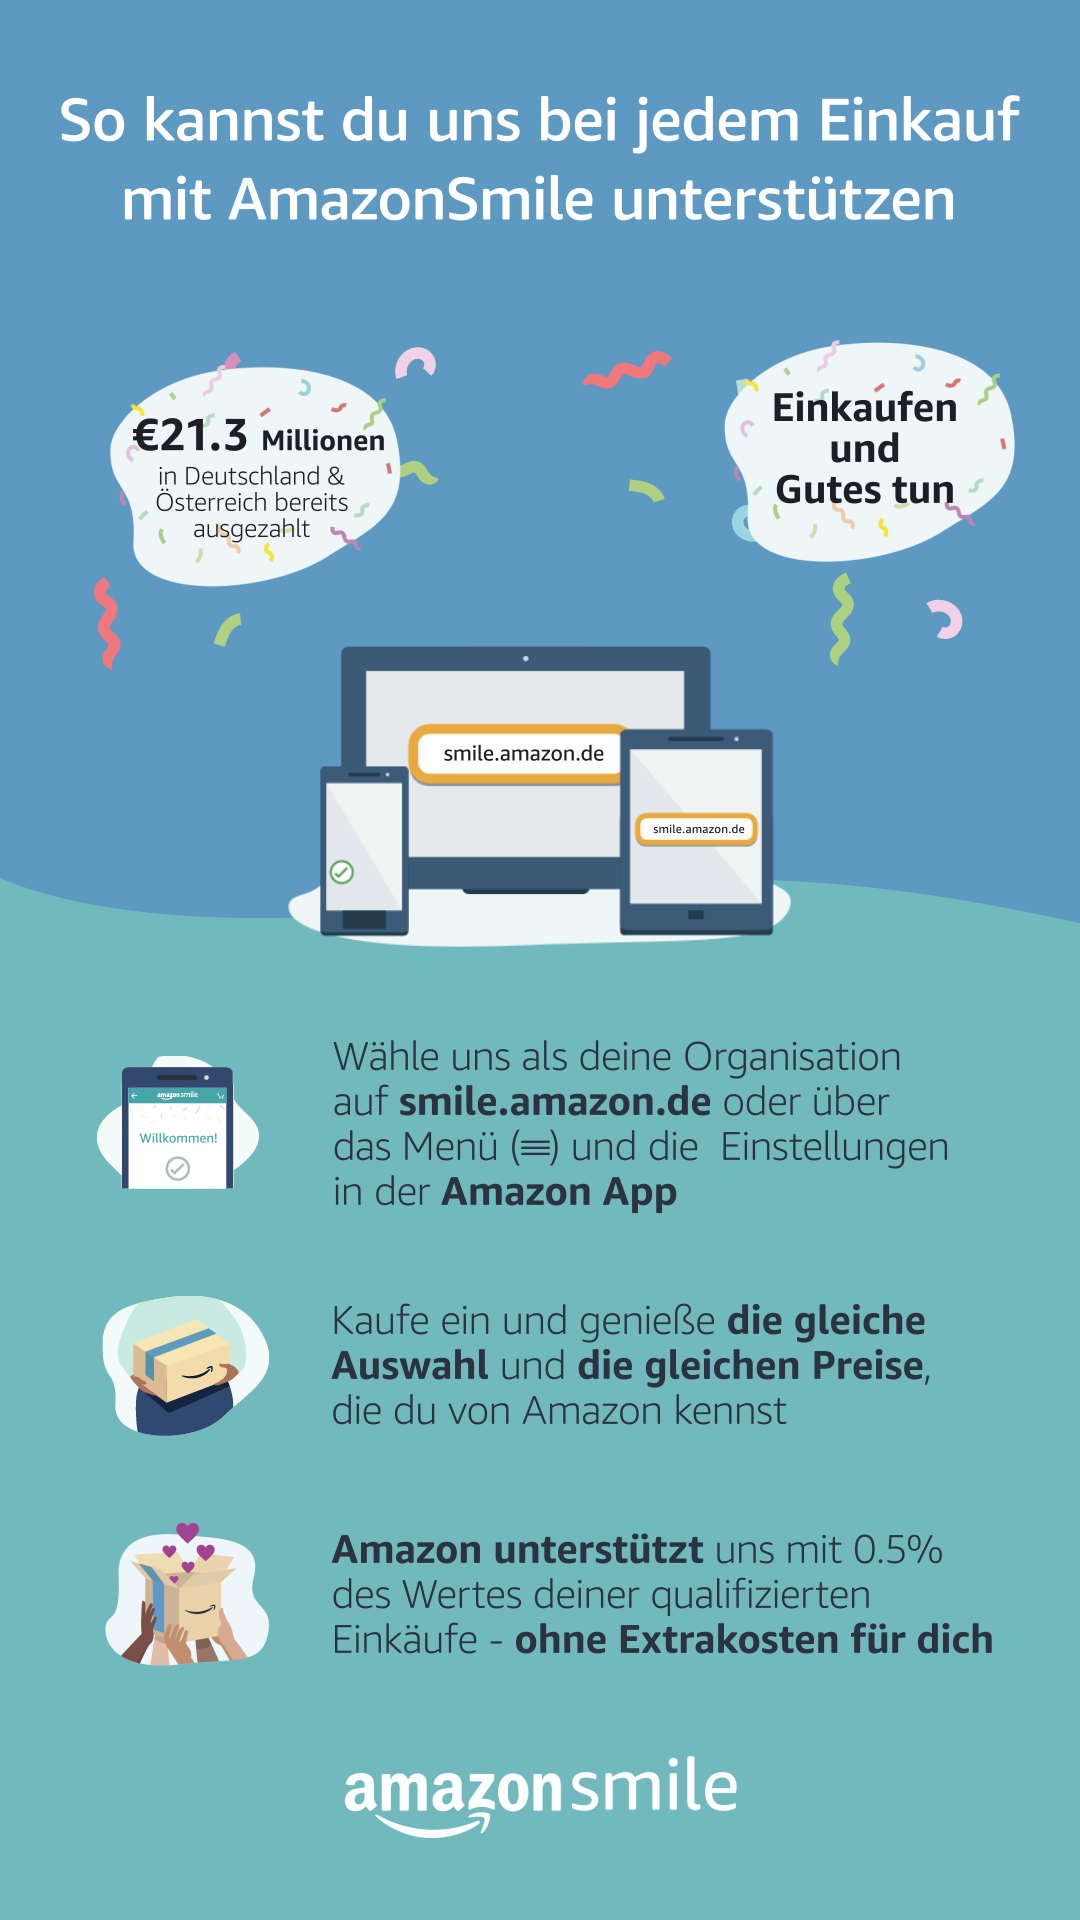 Den Berliner Mädchenchor beim Amazon-Einkauf unterstützen